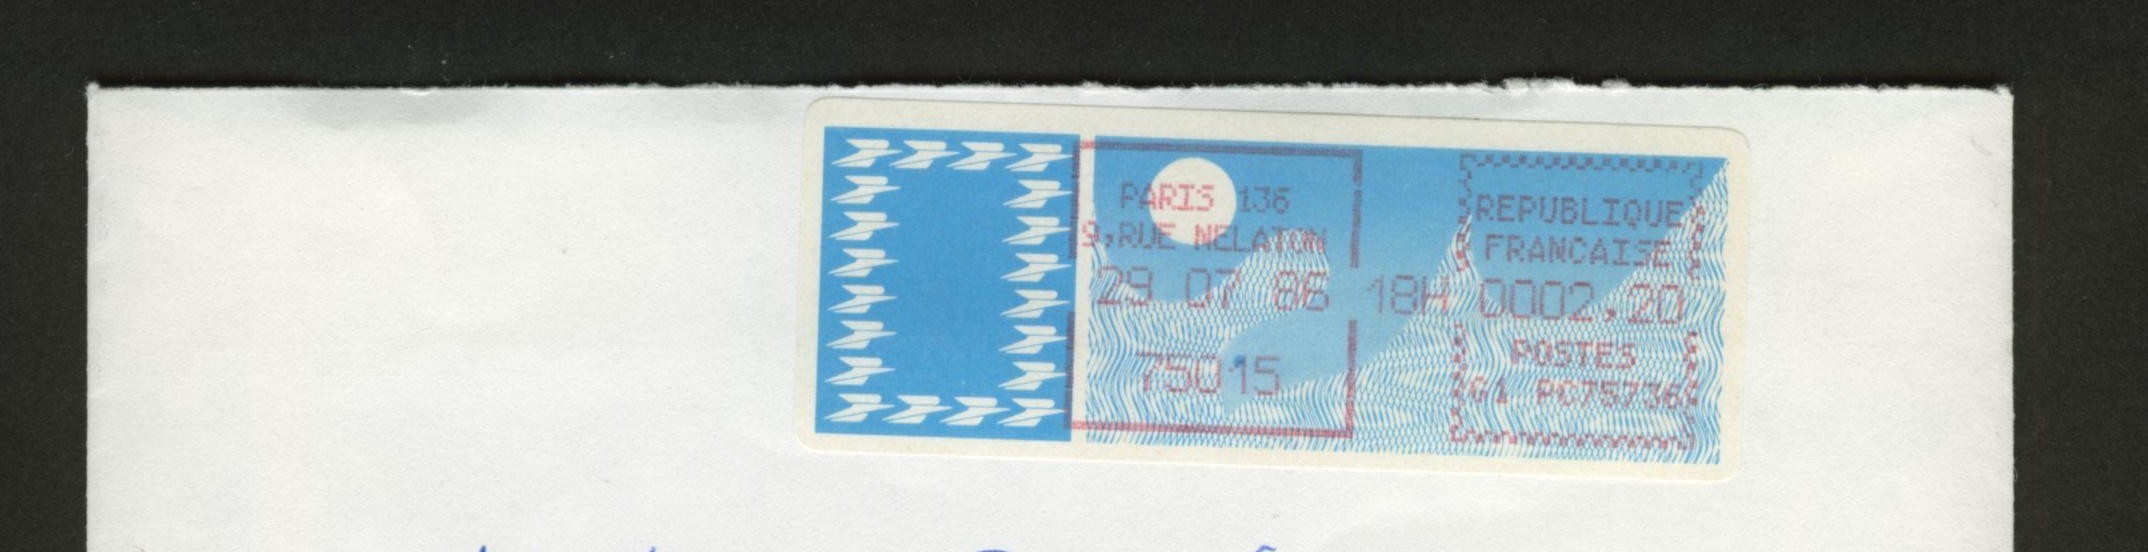 VIGNETTE à 2.20 F  Sur Enveloppe Entière - PARIS 136 75015 - Type N° 95  Cote 8.50 € - 1985 Papier « Carrier »